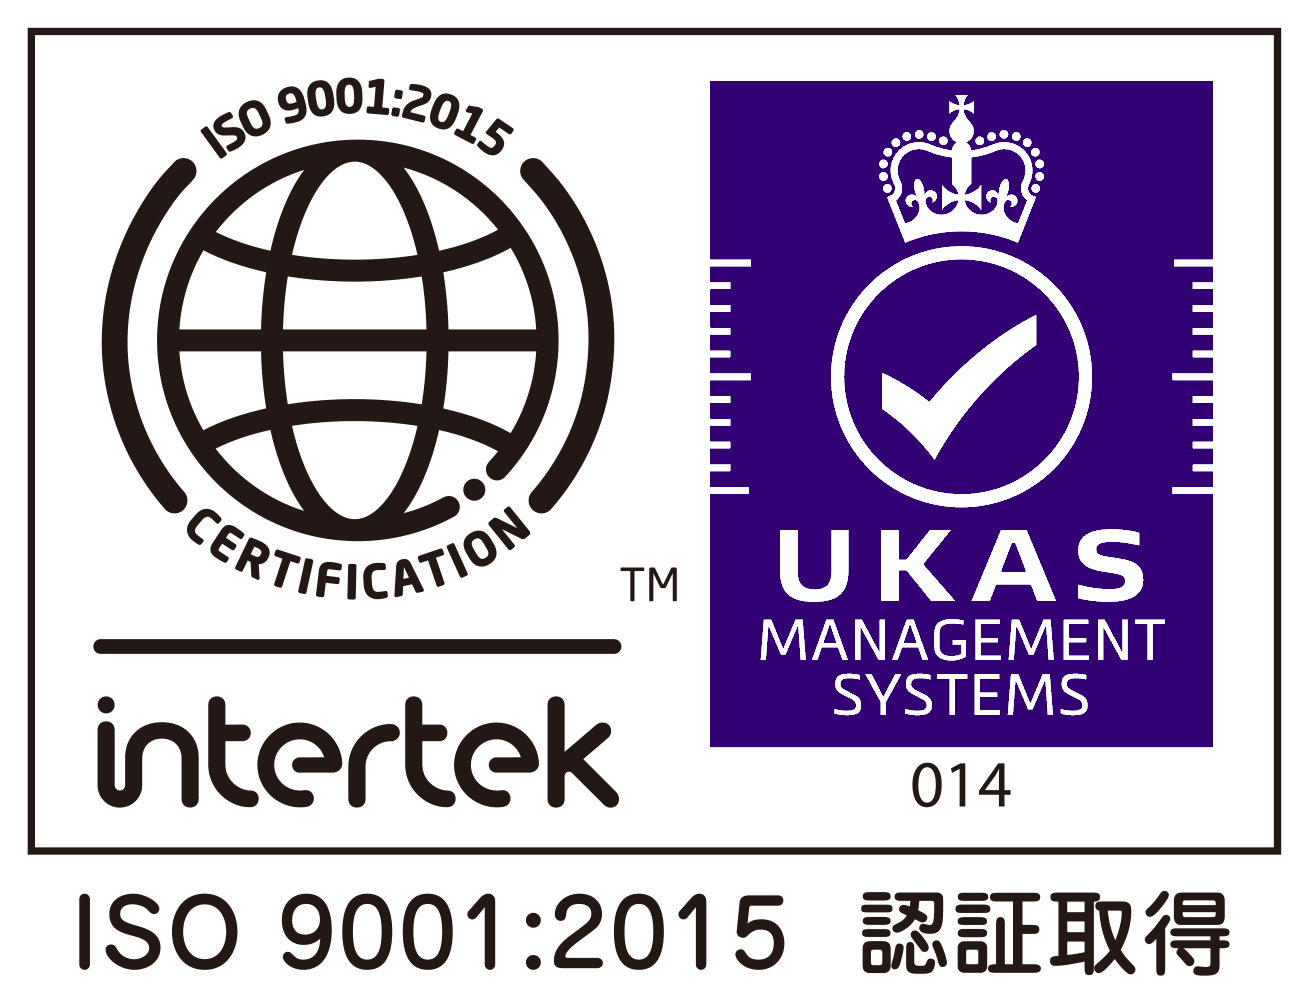 星和台クリニックは、ISO9001:2015認証を取得しています。